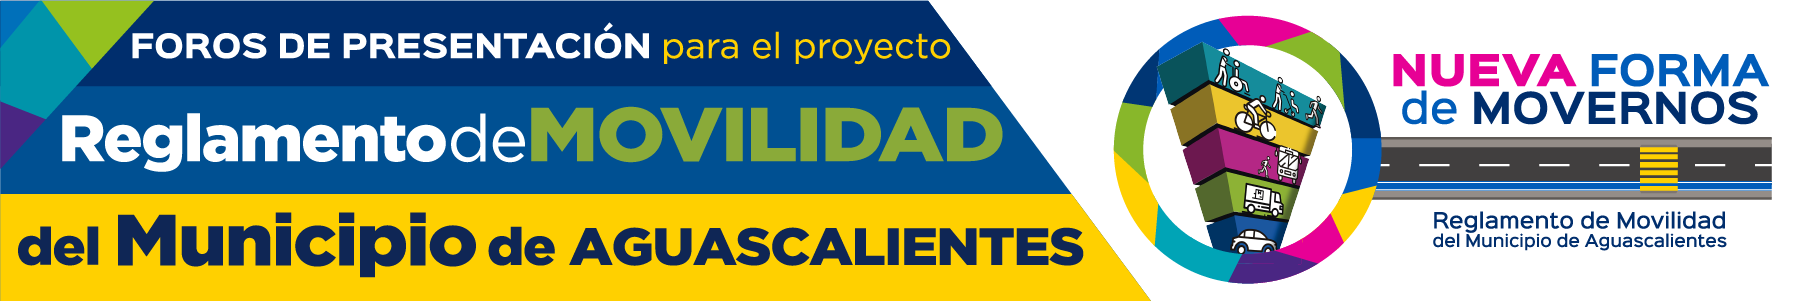 Consulta Programa de Desarrollo Urbano de la Ciudad de Aguascalientes 2040 